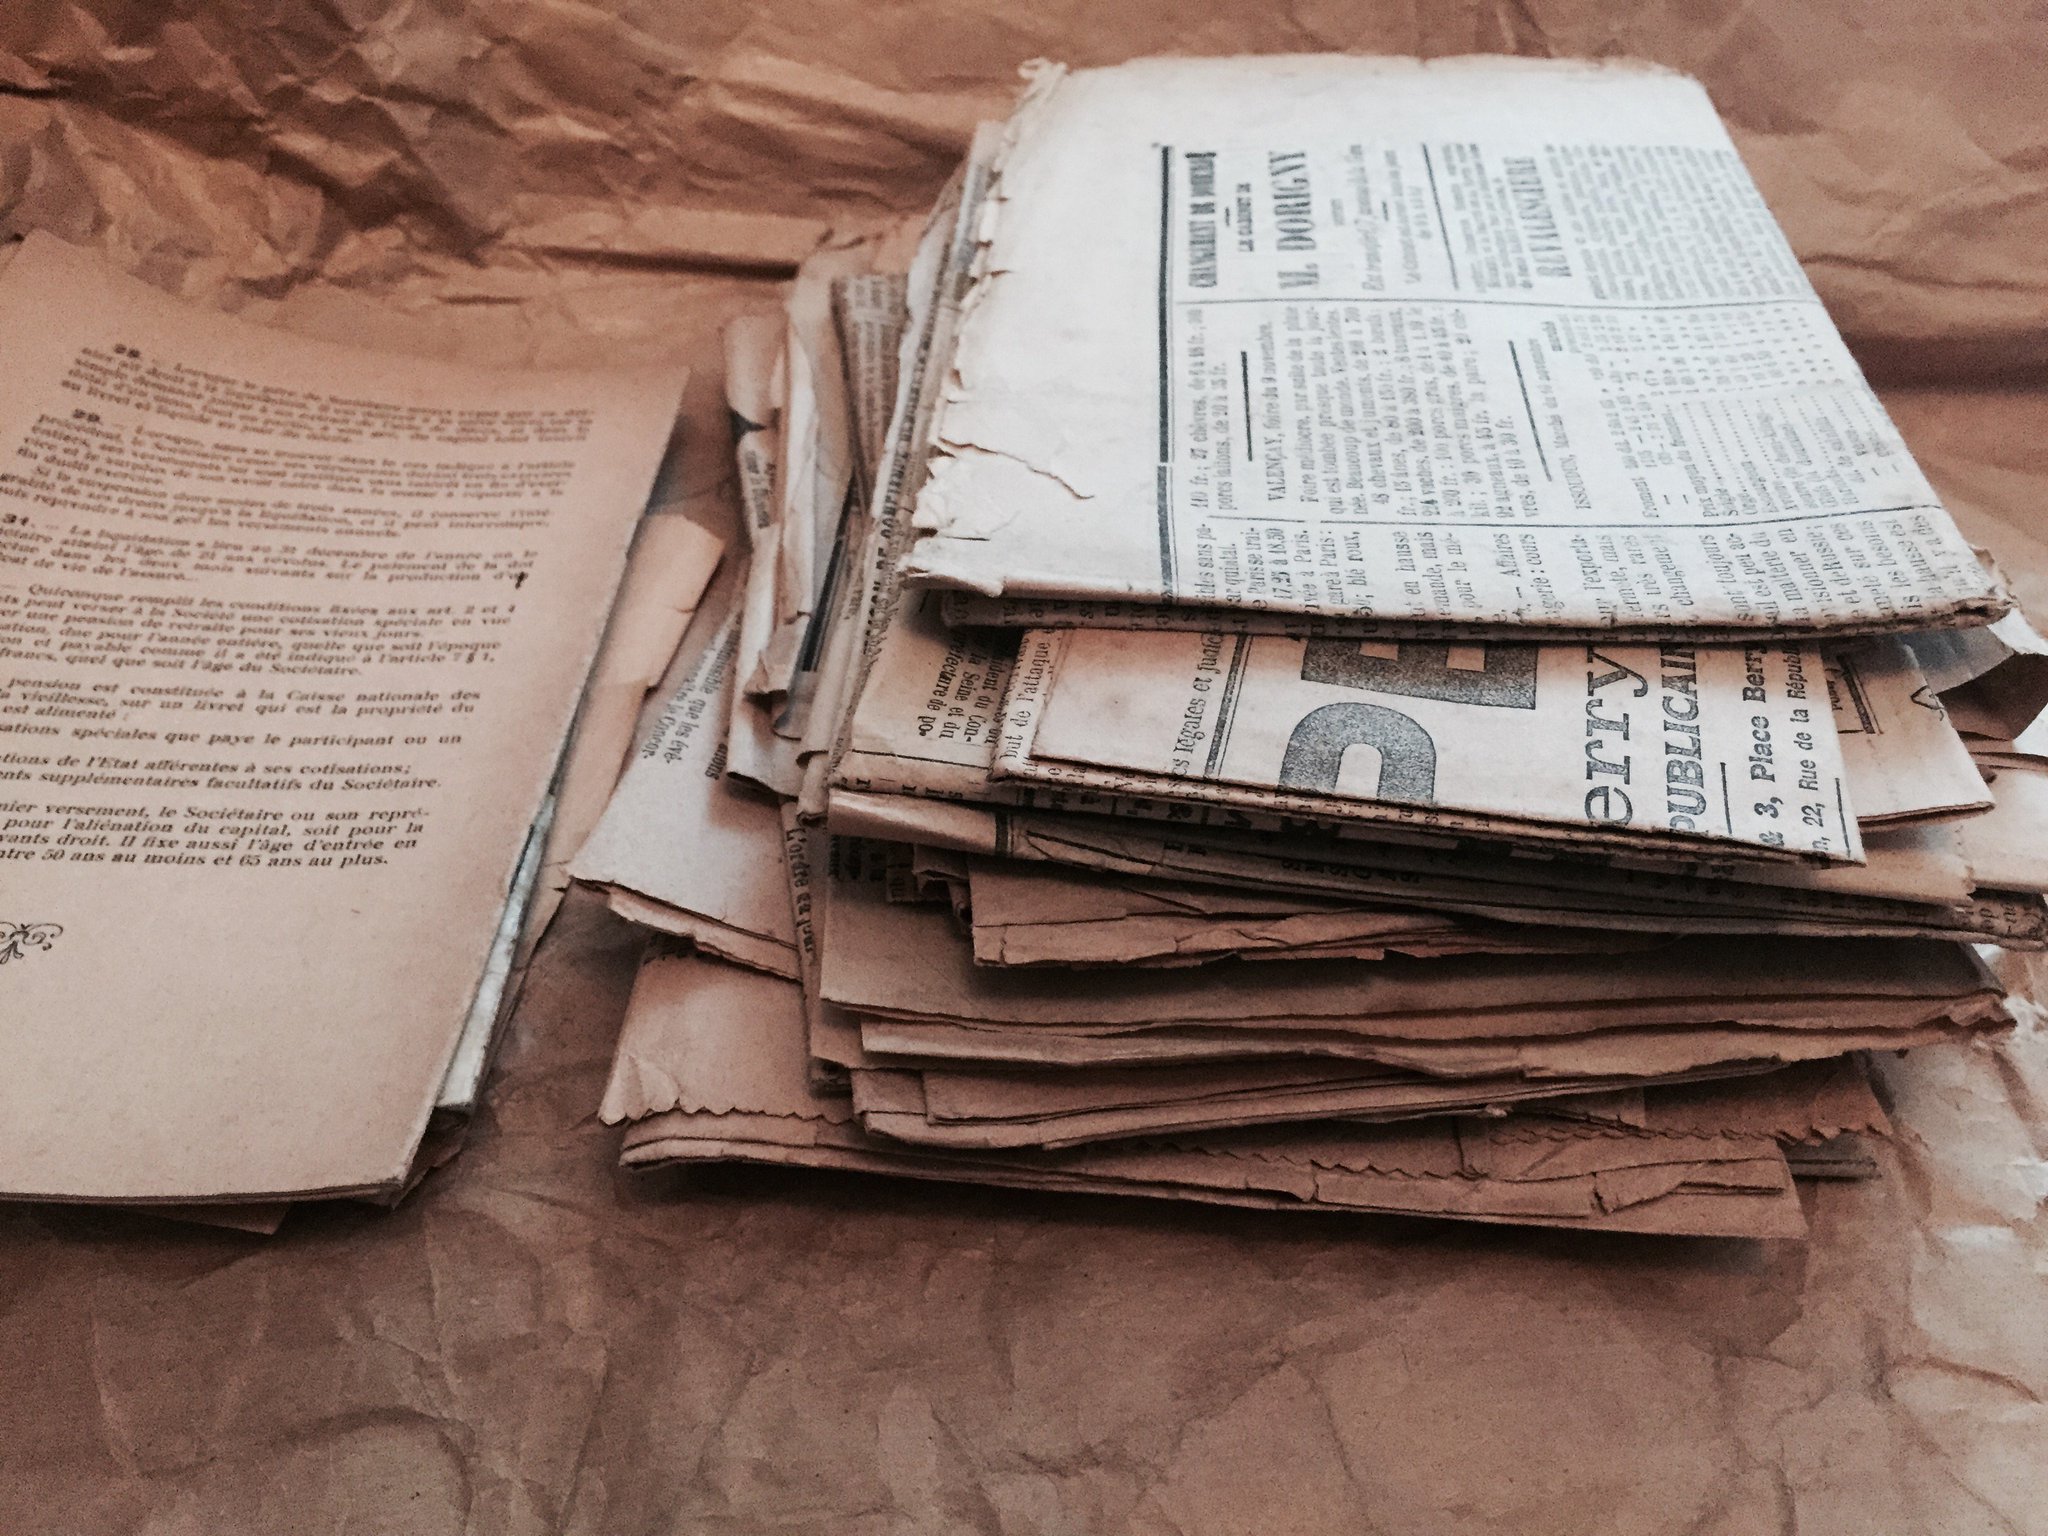 Dessous, un tas de vieux journaux pliés #Madeleineproject https://t.co/ej4al0YRoU